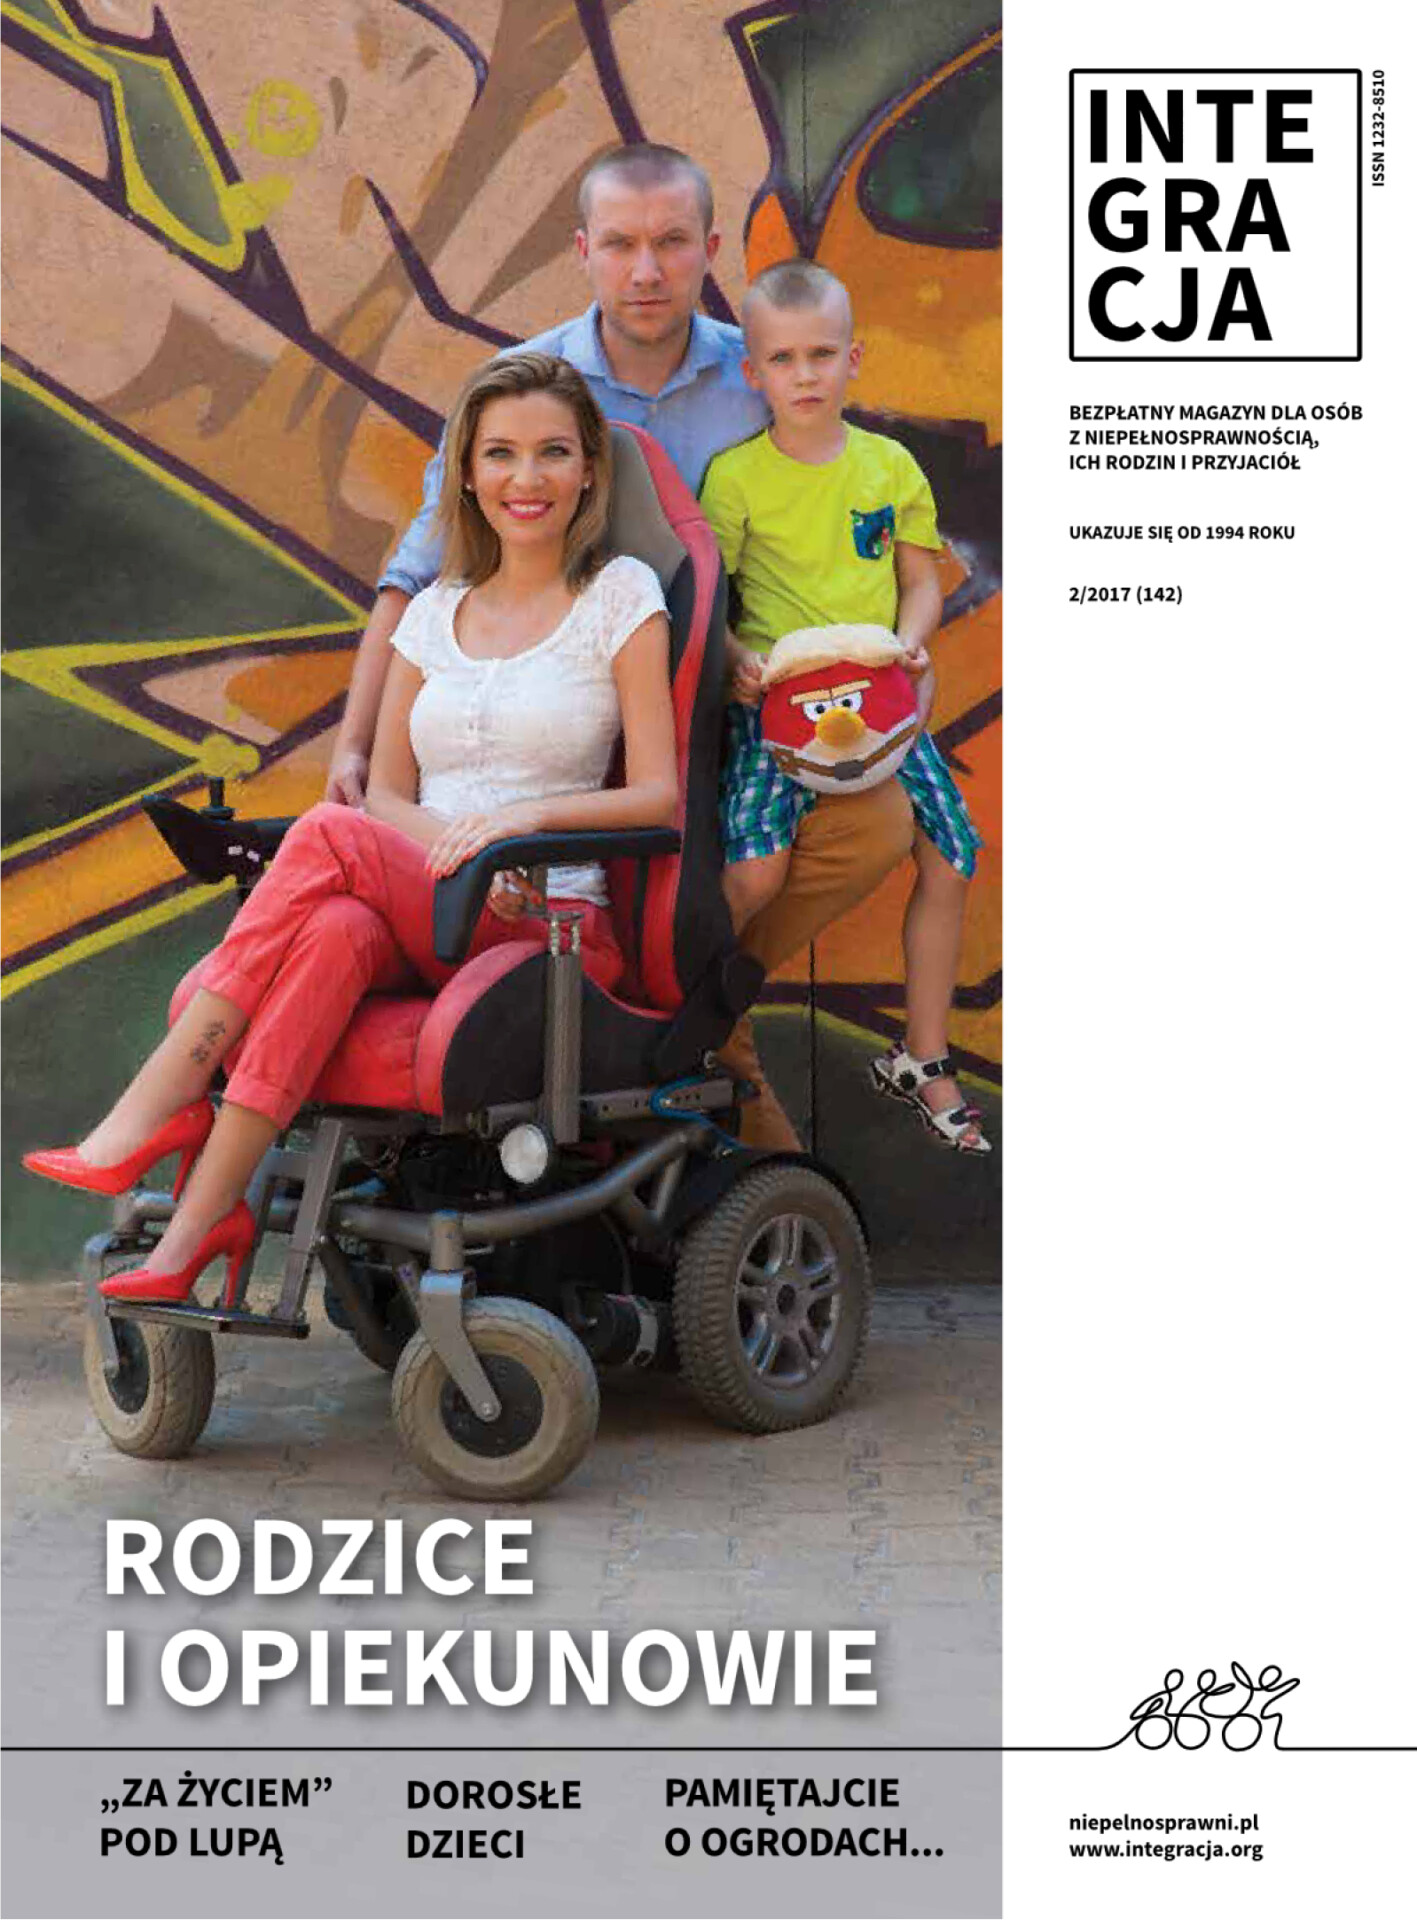 Okładka Integracja_2_2017. Na zdjęciu młoda dziewczyna w szpilkach na wózku elektrycznym, z tyłu za nią mąż z synkiem. ambasadorem. Kliknięcie przekierowuje do całego magazynu w PDF-ie dostępnym.